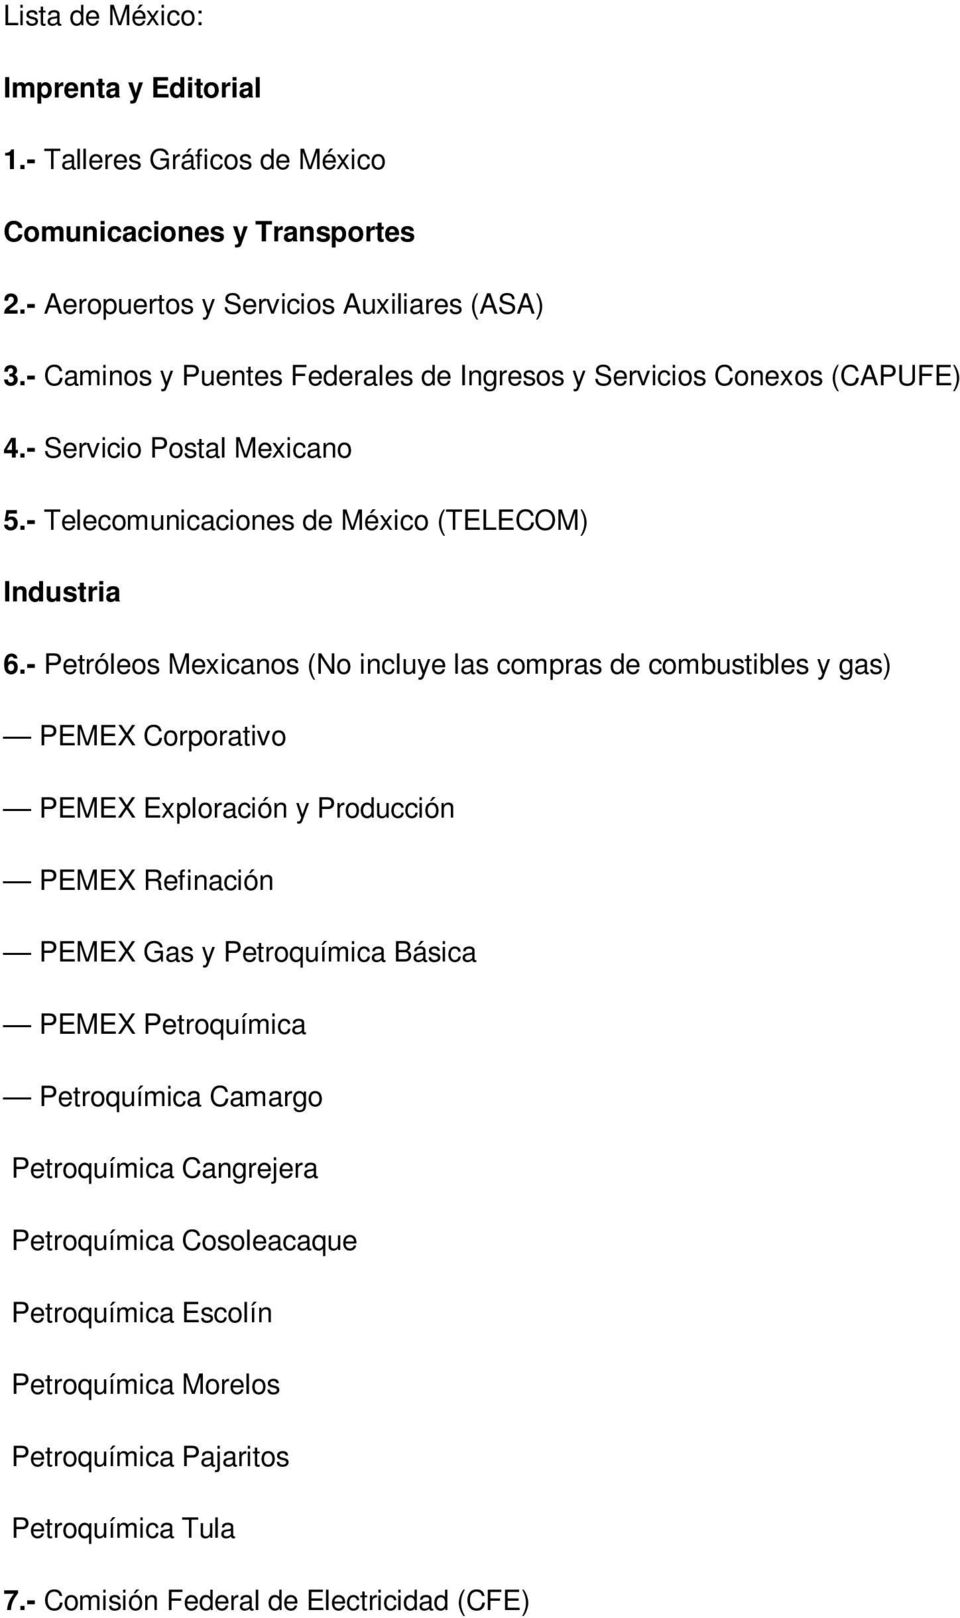 - Petróleos Mexicanos (No incluye las compras de combustibles y gas) PEMEX Corporativo PEMEX Exploración y Producción PEMEX Refinación PEMEX Gas y Petroquímica Básica